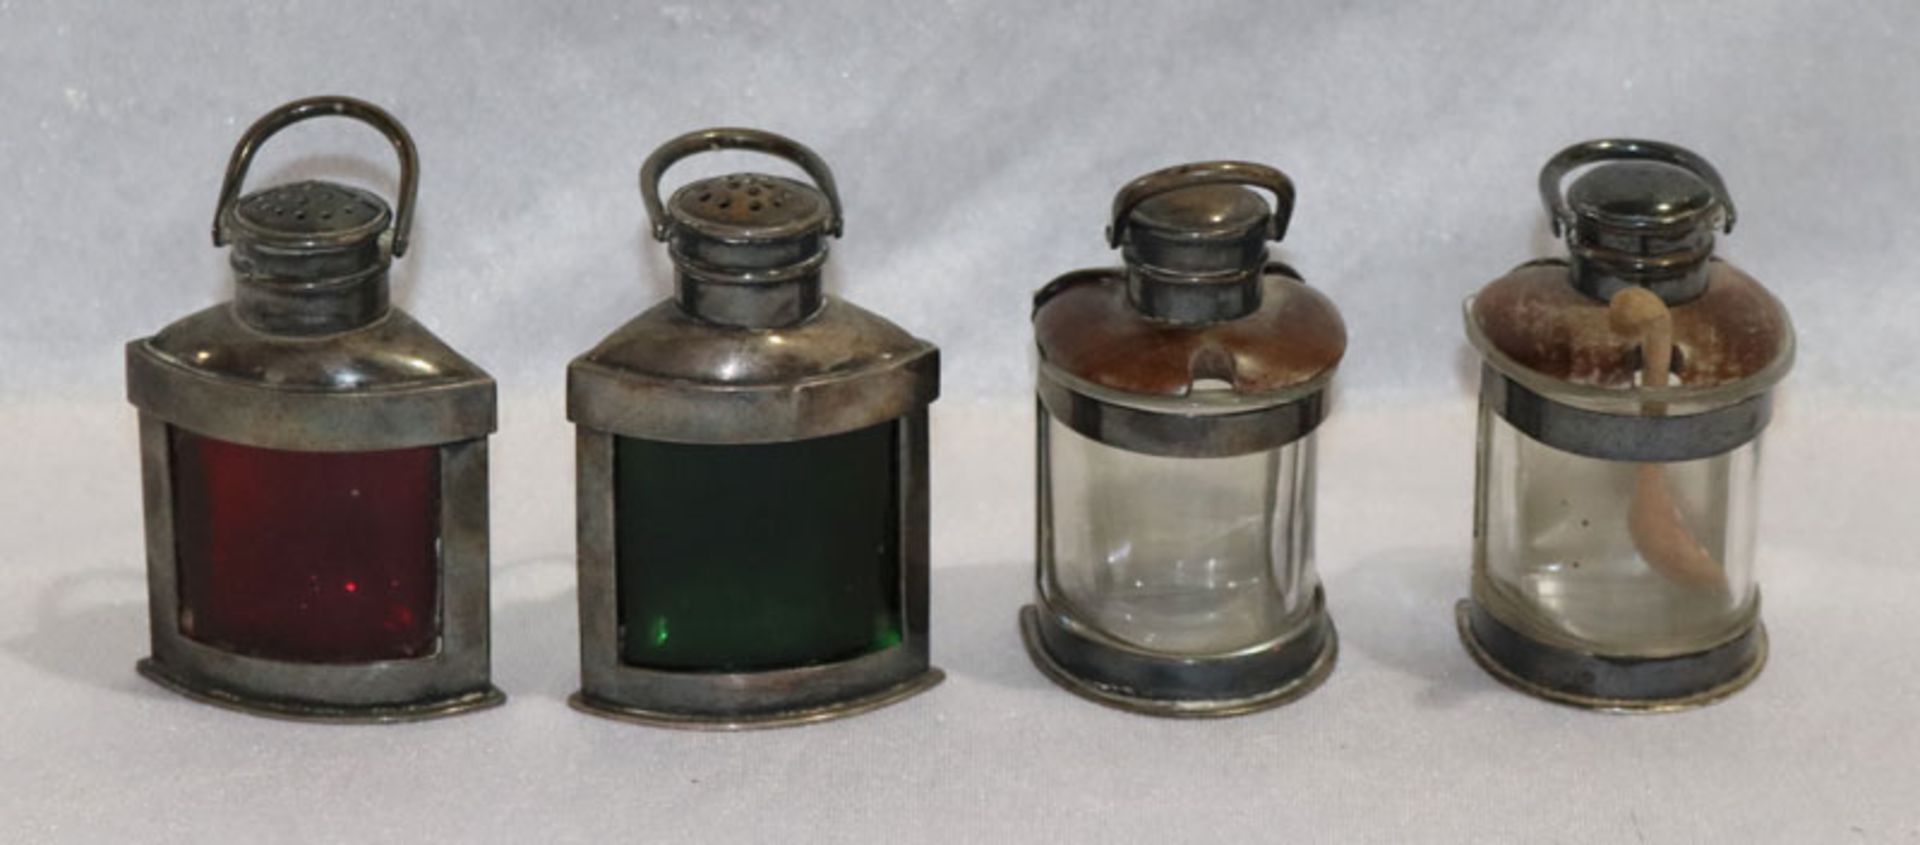 2 Salzgefäße in Form einer Schiffslampe, eines 800 Silber, gemarkt M. Hansen, eines versilbert, H 10